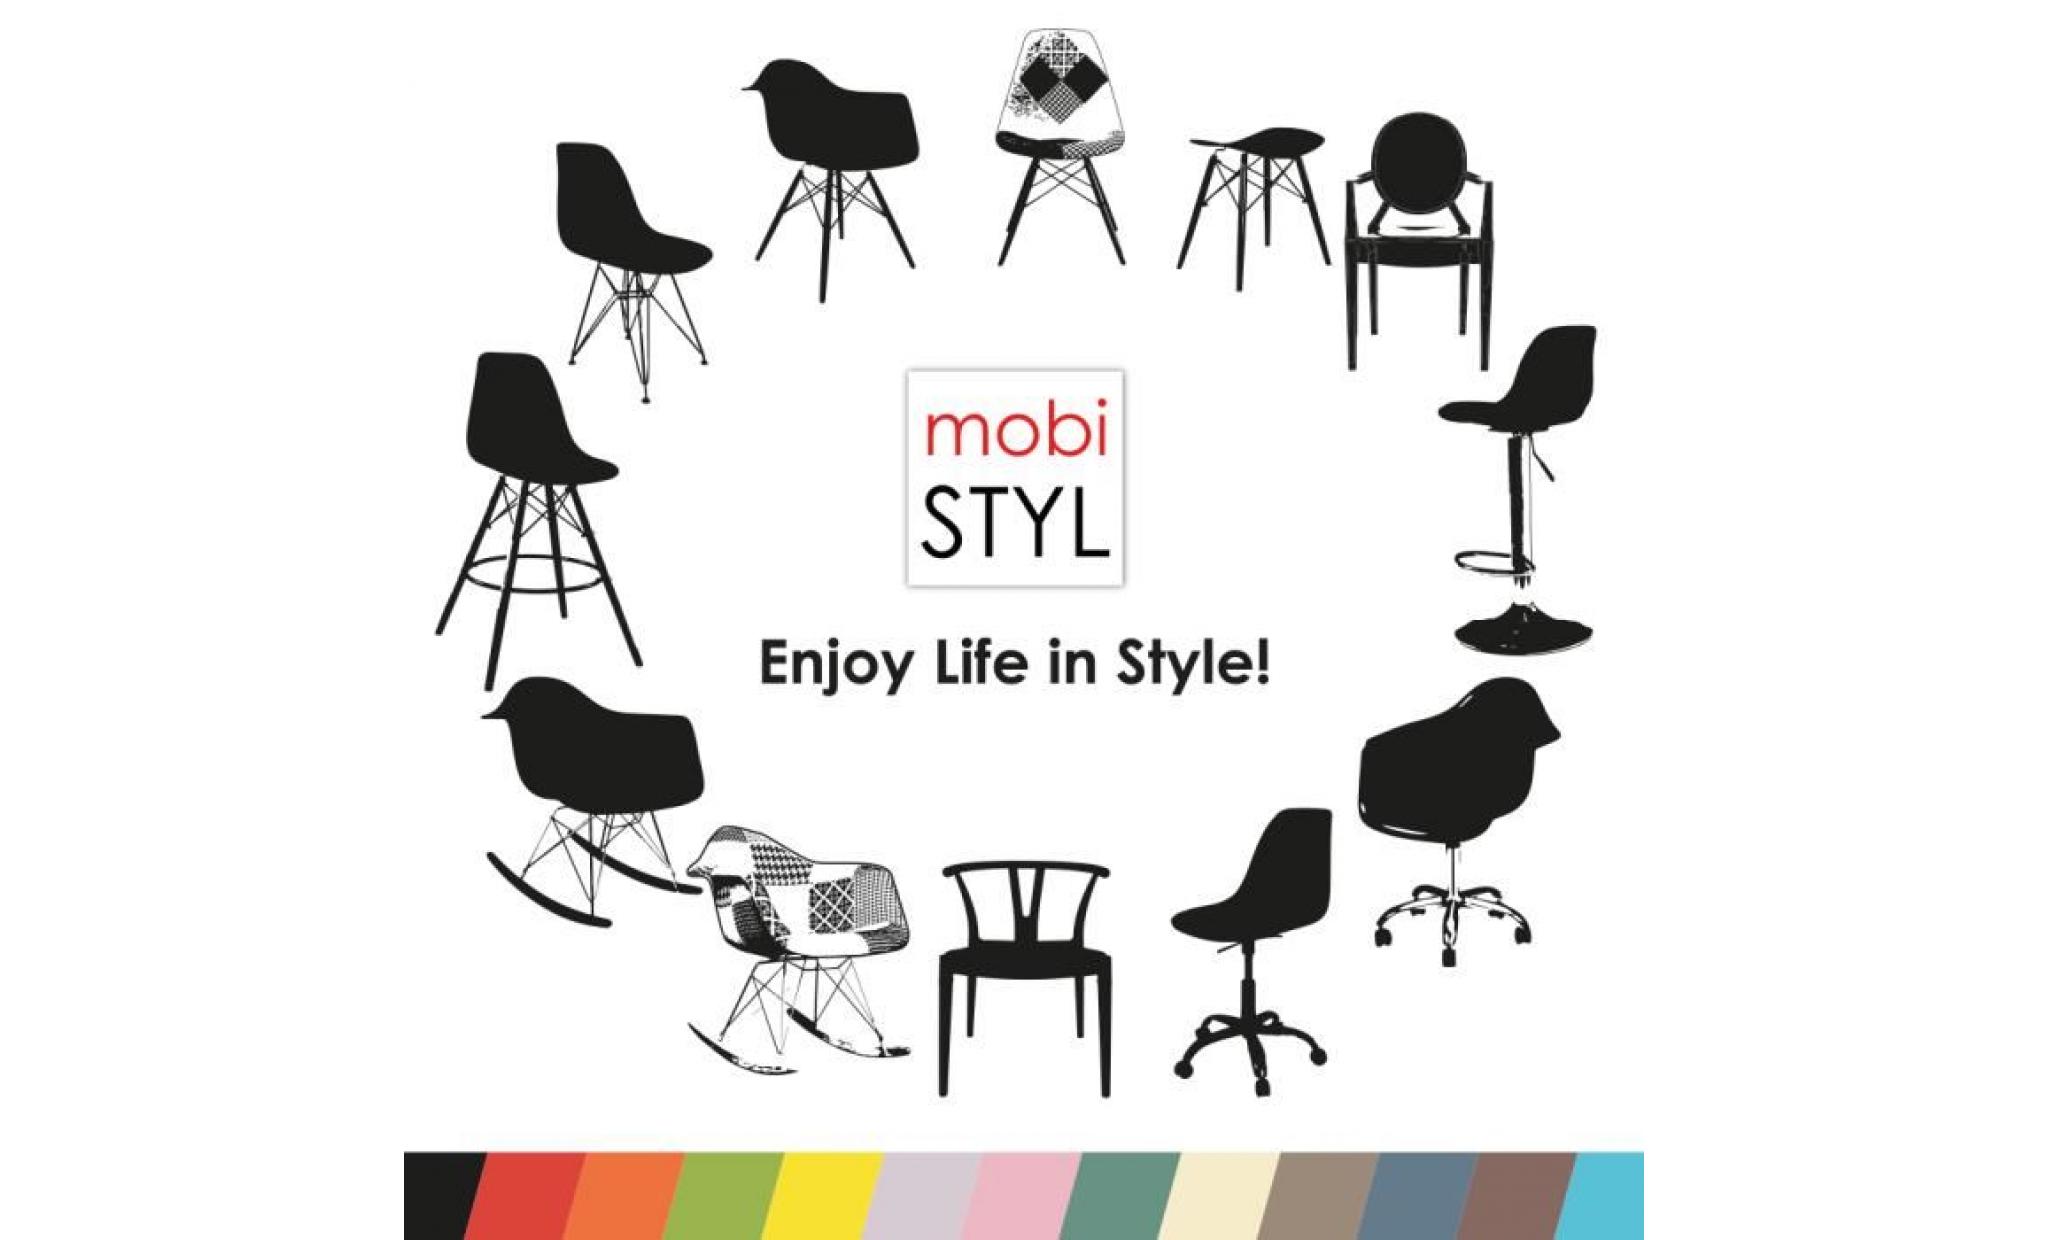 1 x fauteuil à bascule rocking chair design inspiration eiffel eames rar pieds bois clair assise blanc mobistyl® pas cher